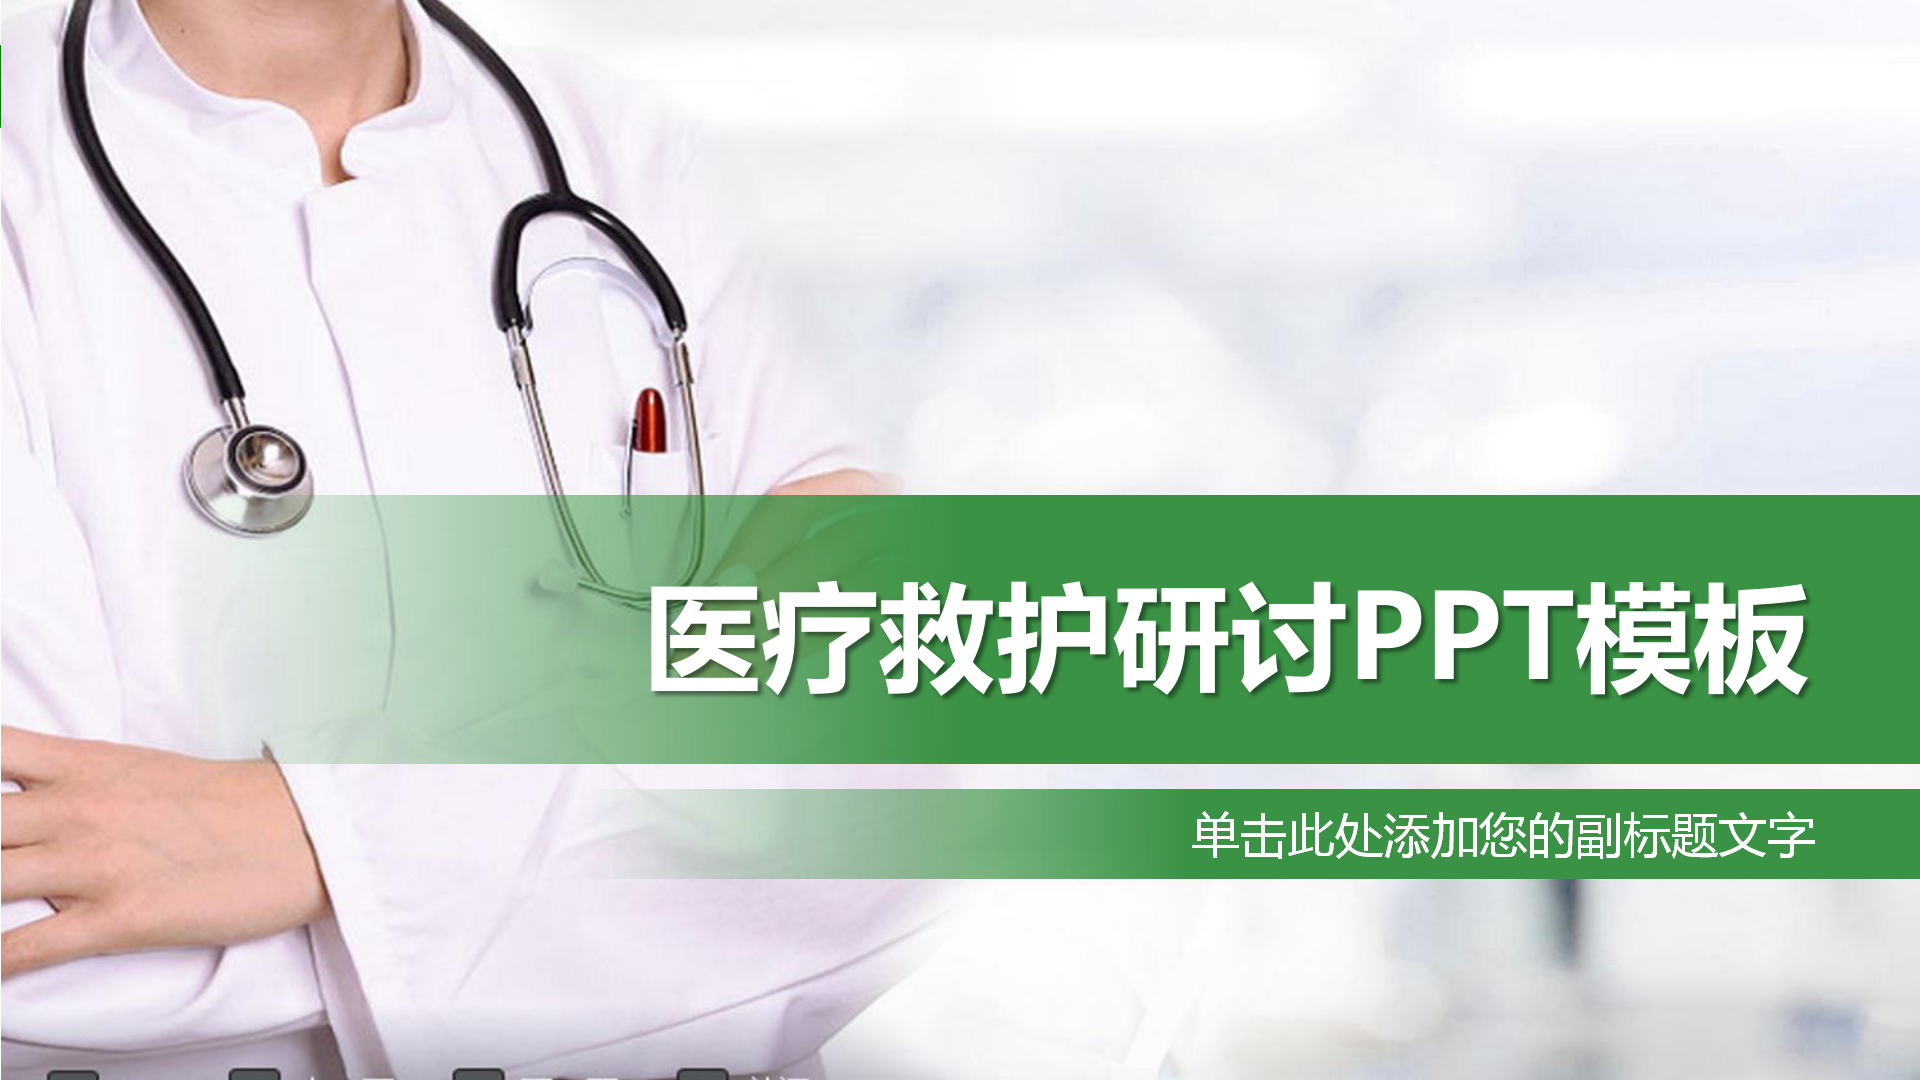 绿色医疗救护研讨PPT模板